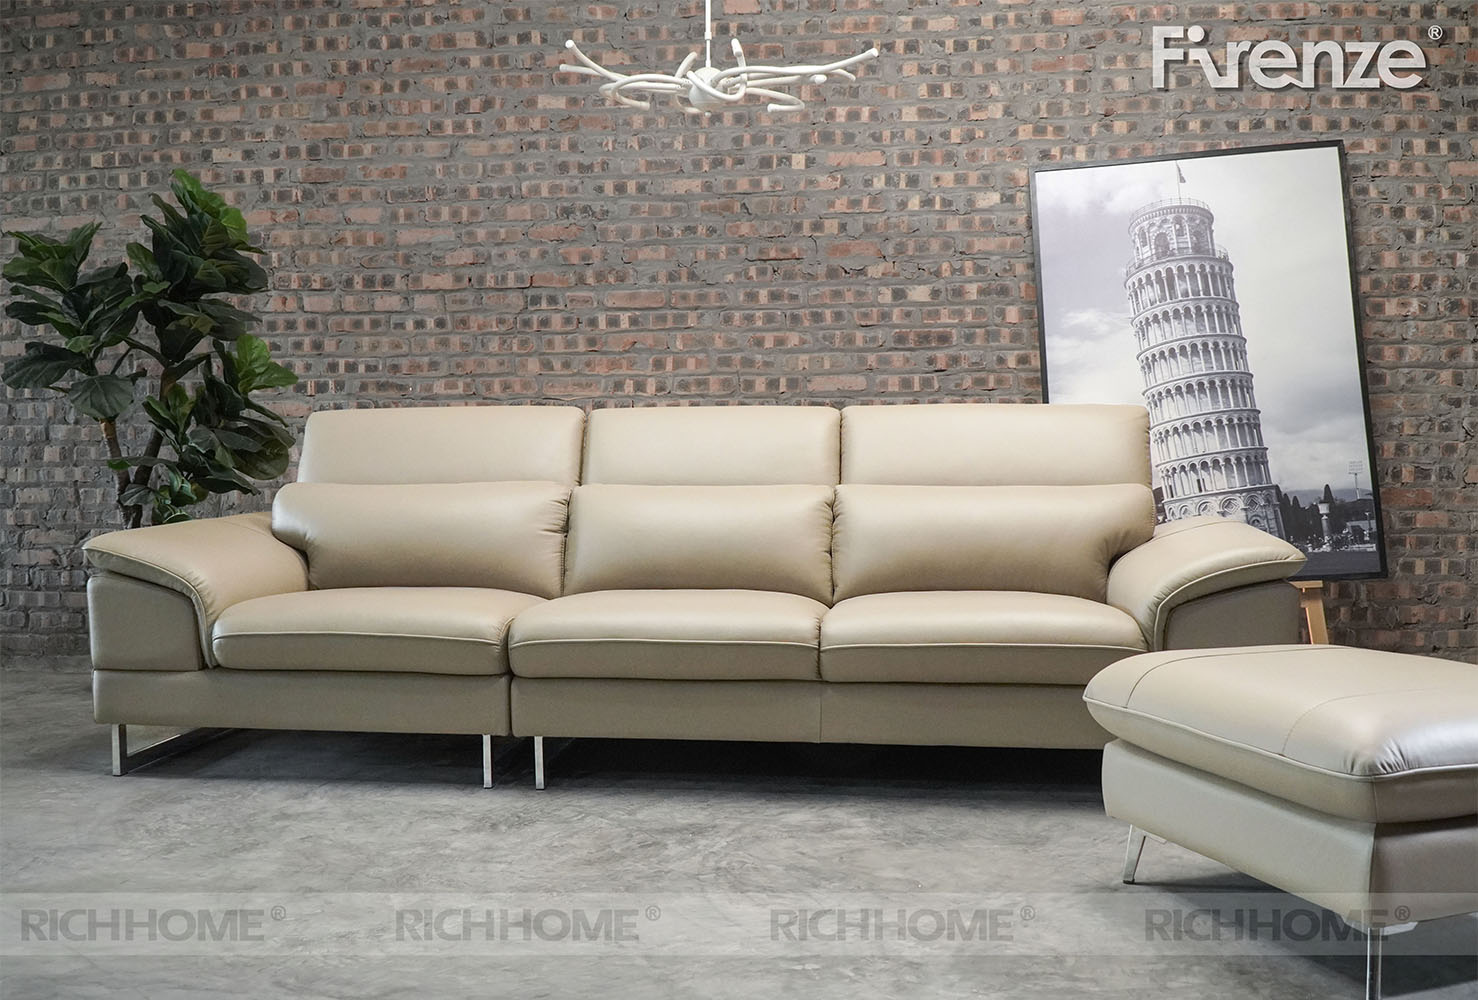 Tổng hợp những mẫu ghế sofa nằm ngủ thoải mái nhất - Ảnh 11